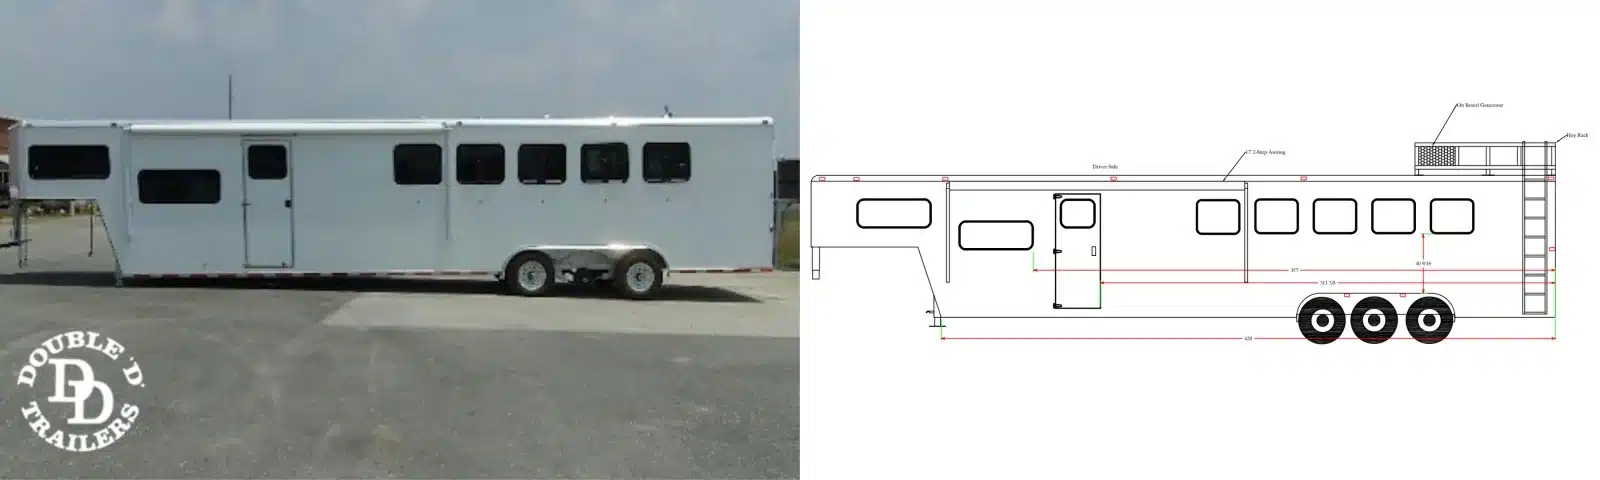 5 Horse LQ trailer